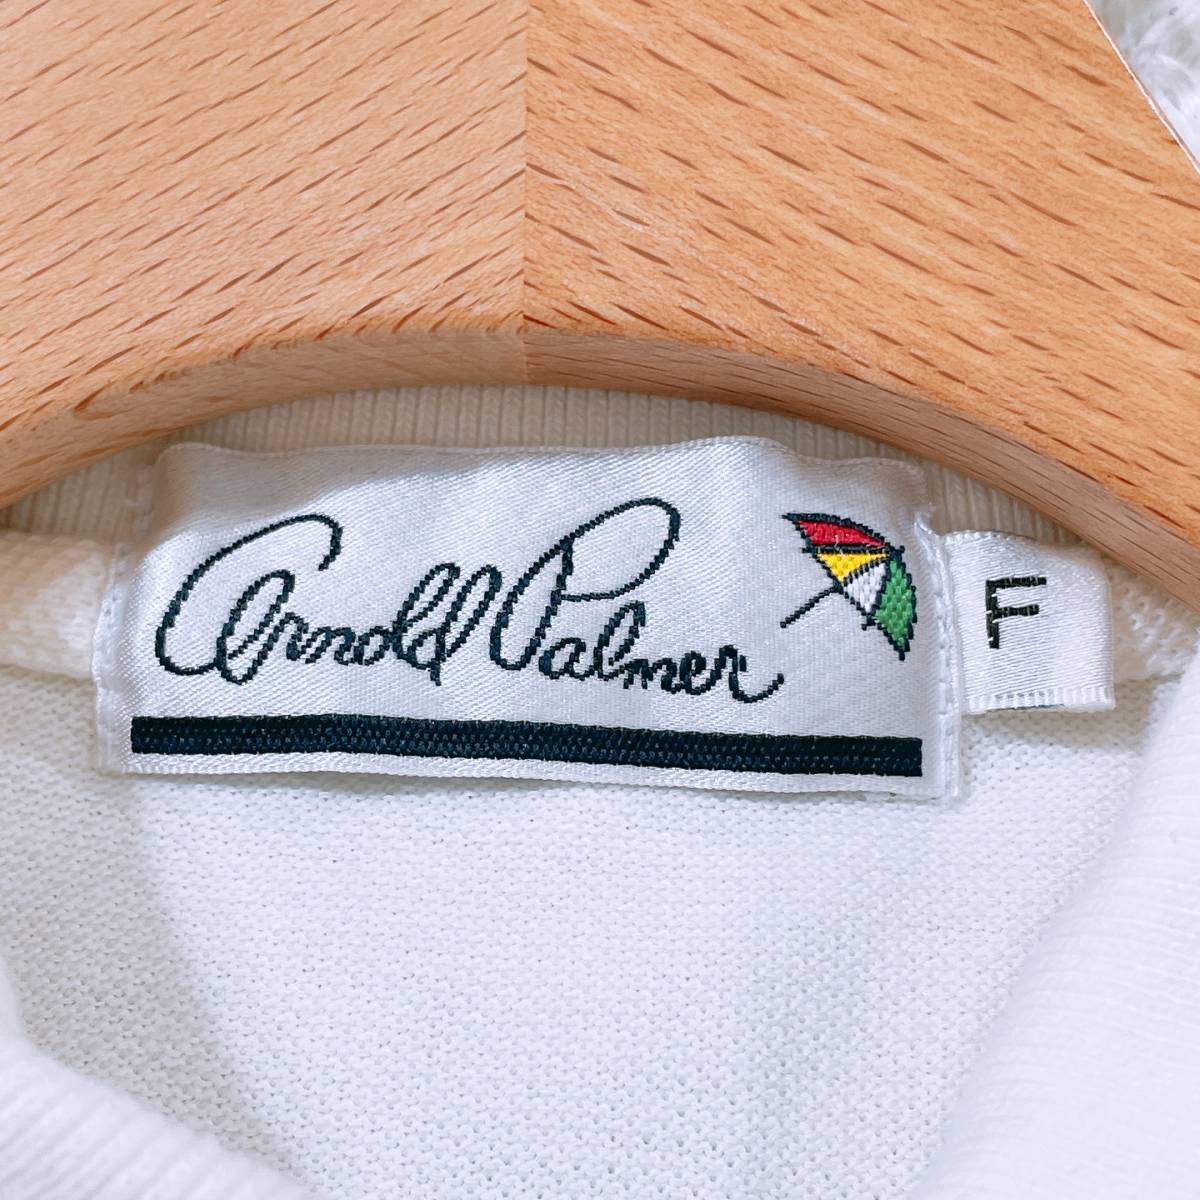 レディースF Arnold Palmer トップス ホワイト タンクトップ 刺繍 シンプル 襟 薄手 細身 小さめ かわいい アーノルドパーマー【12619】